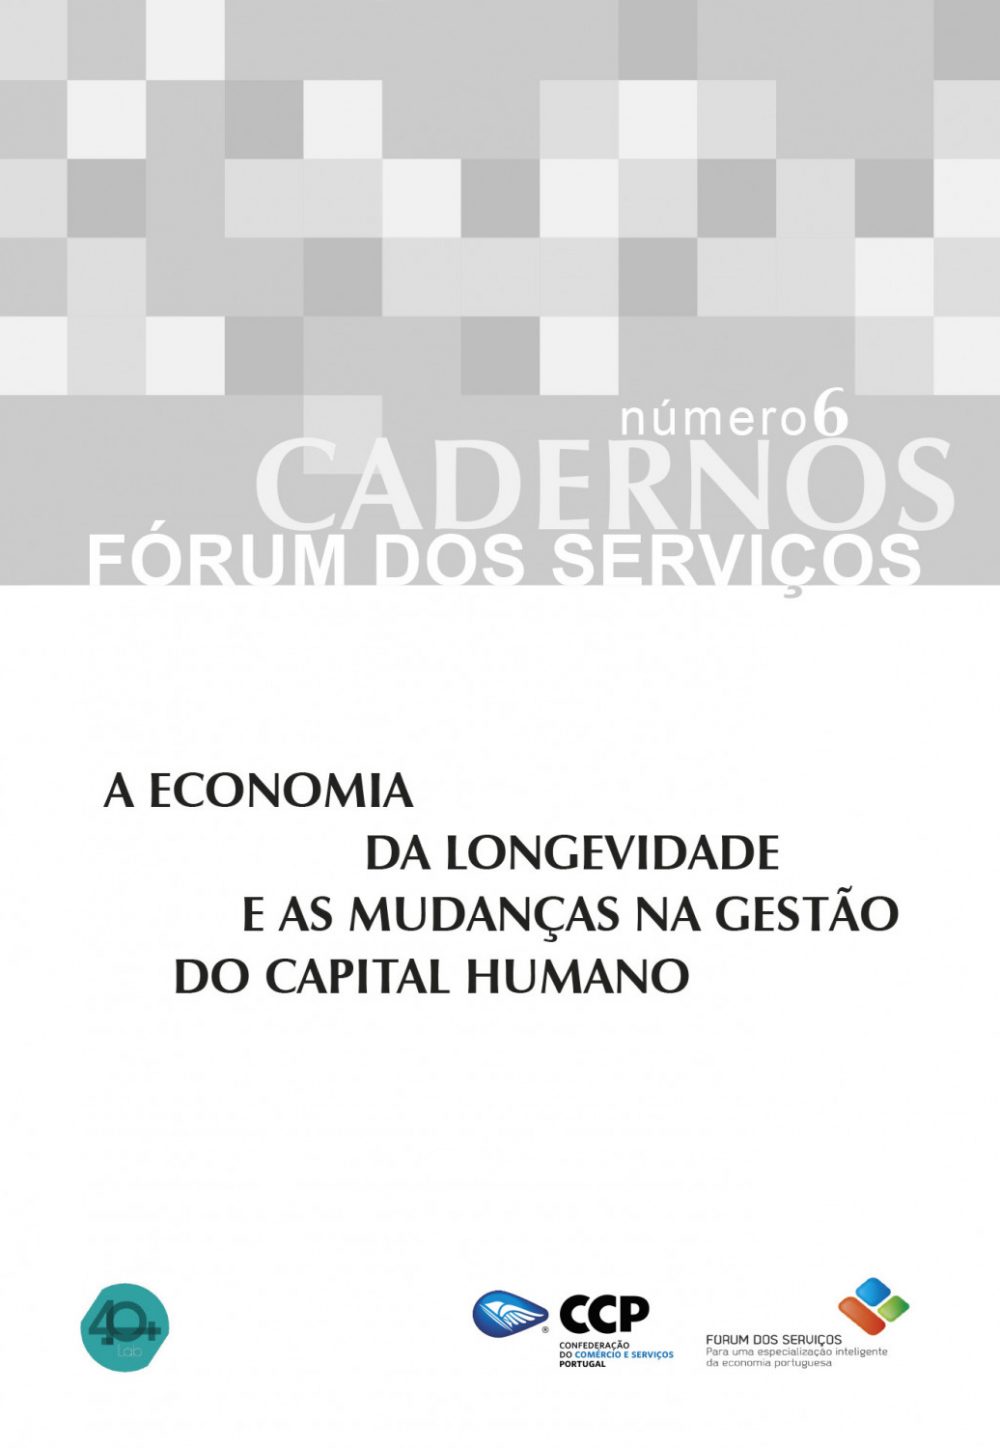 A Economia da Longevidade e as mudanças na gestão do Capital Humano